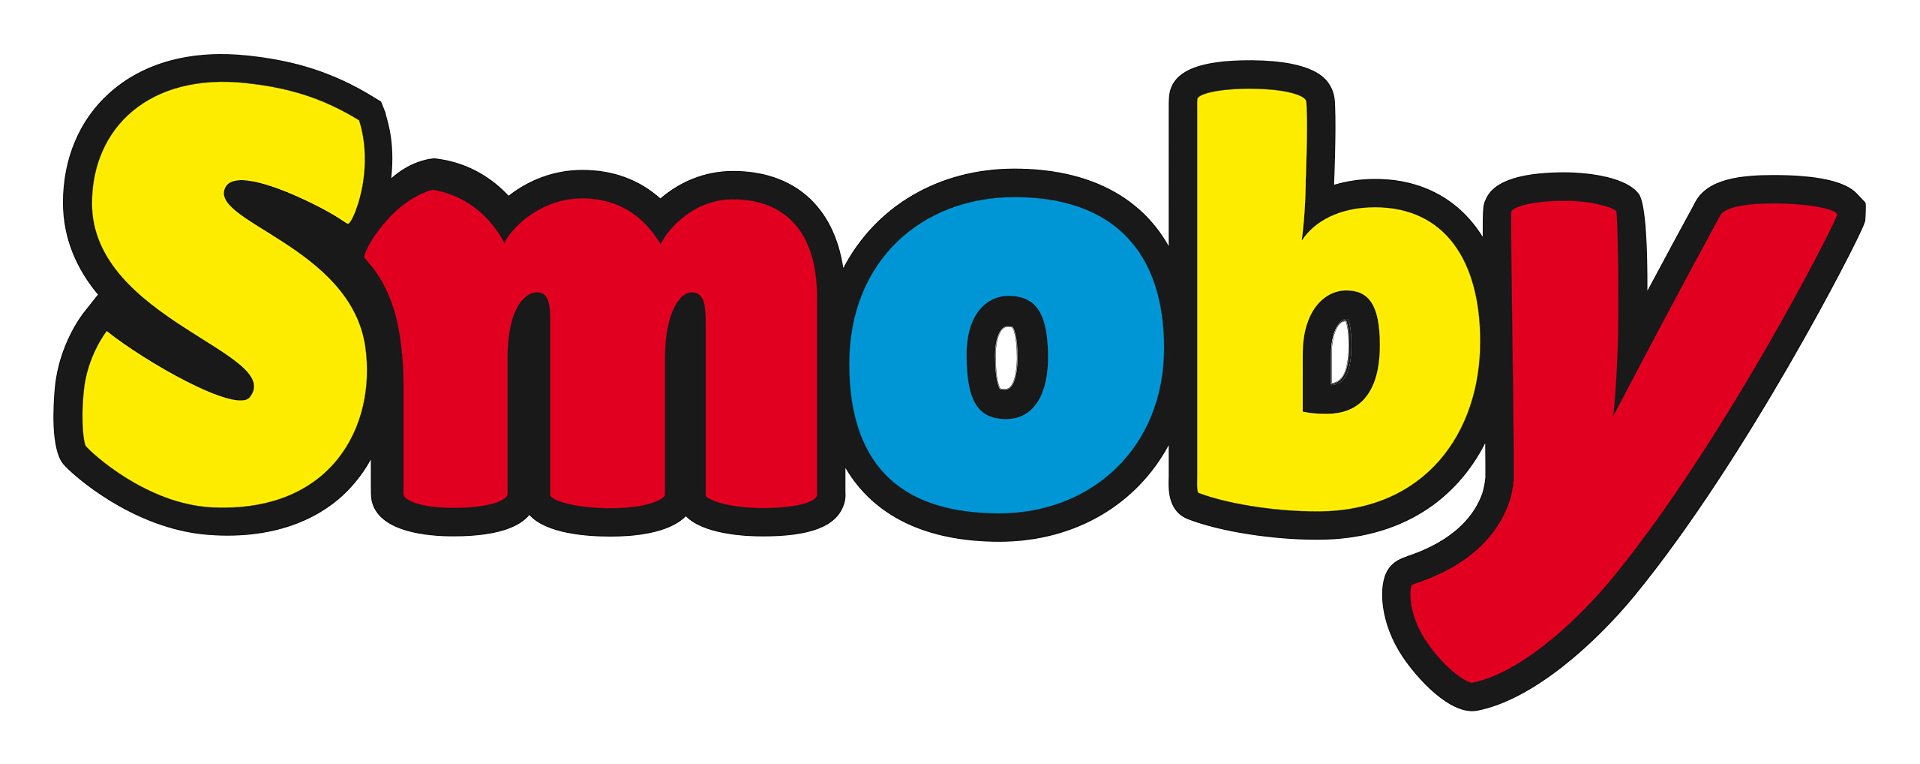 Smoby Supermarkt: Kinder-Einkaufswagen für realistisches Spielen